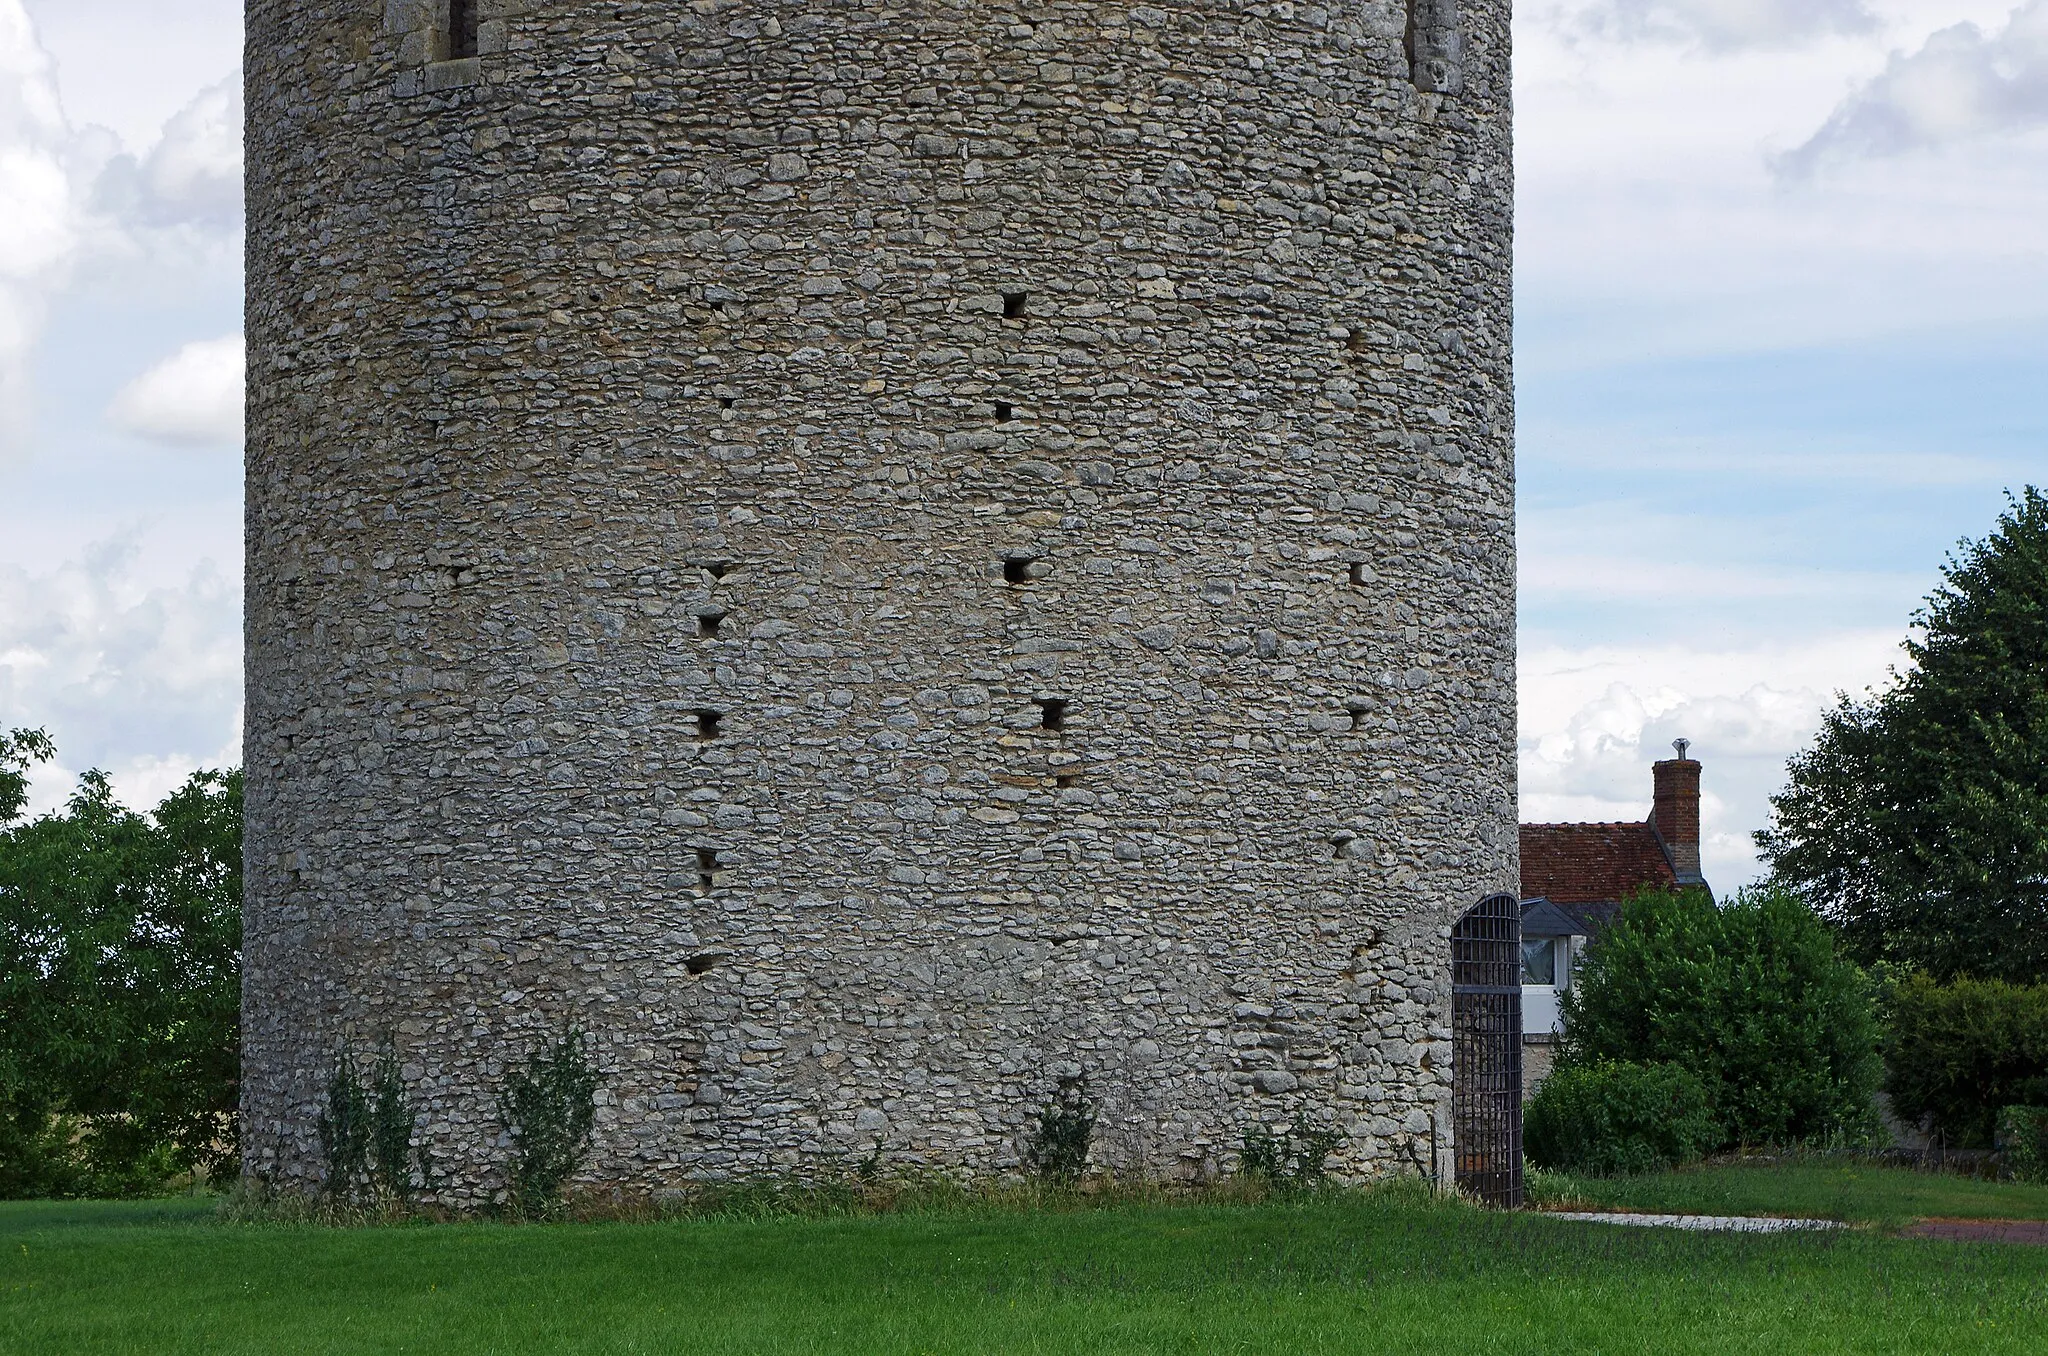 Photo showing: Athée-sur-Cher (Indre-et-Loire)
La tour du Brandon.
La tour semble avoir été édifiée au XIIème siècle.  Elle occupait à peu près le centre d'une enceinte fortifiée de de 45 à 50 ares. La muraille fortifiée, de 1,40 m d'épaisseur était elle même entourée par des fossés.
La muraille existait encore en 1583, ainsi que l'indique un aveu* du 25 juillet 1583, par Louis de Rohan , seigneur de Montbazon.  Dans le même aveu*, on apprend que la tour avait été "depuis longtemps ruynès en partie par les Anglais".
La muraille d'enceinte a aujourd'hui disparu, sauf quelques éléments inclus dans une construction récente.
Au mois de juin 1846, des ouvriers, en faisant des fouilles dans le voisinage de la tour du Brandon, ont mis à découvert un squelette étendu sur un banc de roc. En recueillant les ossements, on a trouvé parmi eux trente-trois pièces de monnaies d'empereurs romains Marc-Aurèle, Commode, Antonin le Pieux, et autres.
Le premier seigneur connu du Brandon est Guillaume de Brandon (Guillelmus de Brandone) mort en 1205.
La châtellennie du Brandon releva du château de Montbazon.
(Archives d'Athée-sur-Cher)
L'utilité de cette forteresses est assez obscure. Un hypothèse veut qu'il s'agirait plutôt d'une tour à signaux que d'un donjon. En effet, située sur un point culminant (97m au-dessus du niveau de la mer), elle pouvait transmettre des signaux aux châteaux de Montrichard (132m), de Montbazon (87m), de Reignac (96m), de Loches (124m), d'Amboise (107m), etc.
A l'occasion de la construction de l'autoroute A85, des fouilles ont montré dans le secteur de la Tour de Brandon des occupations gauloises et gallo-romaines. (INRAP TH. GUIOT)

aveu : En droit féodal, l'aveu est une déclaration écrite que doit fournir le vassal à son suzerain lorsqu’il entre en possession d’un fief. L’aveu est accompagné d’un dénombrement ou minu décrivant en détail les biens composant le fief. L'aveu est un acte qui établi une vassalité. (Un homme sans aveu n'est donc pas "reconnu", c'est un vagabond.). Etant écrit, l'aveu se distingue de "l'acte de foi et hommage" qui était un engagement oral d'homme à homme.

Tower Brandon.
The tower appears to have been built in the twelfth century. It occupied approximately the center of a walled area of ​​45 to 50 acres. The fortified wall, 1.40 m thick was itself surrounded by moats.
The surrounding wall has now disappeared, except for some items included in a recent construction.
The first known lord of Brandon William Brandon (Guillelmus of Brandone) died in 1205.

The castellany of Brandon was a vassal of the castle of Montbazon.